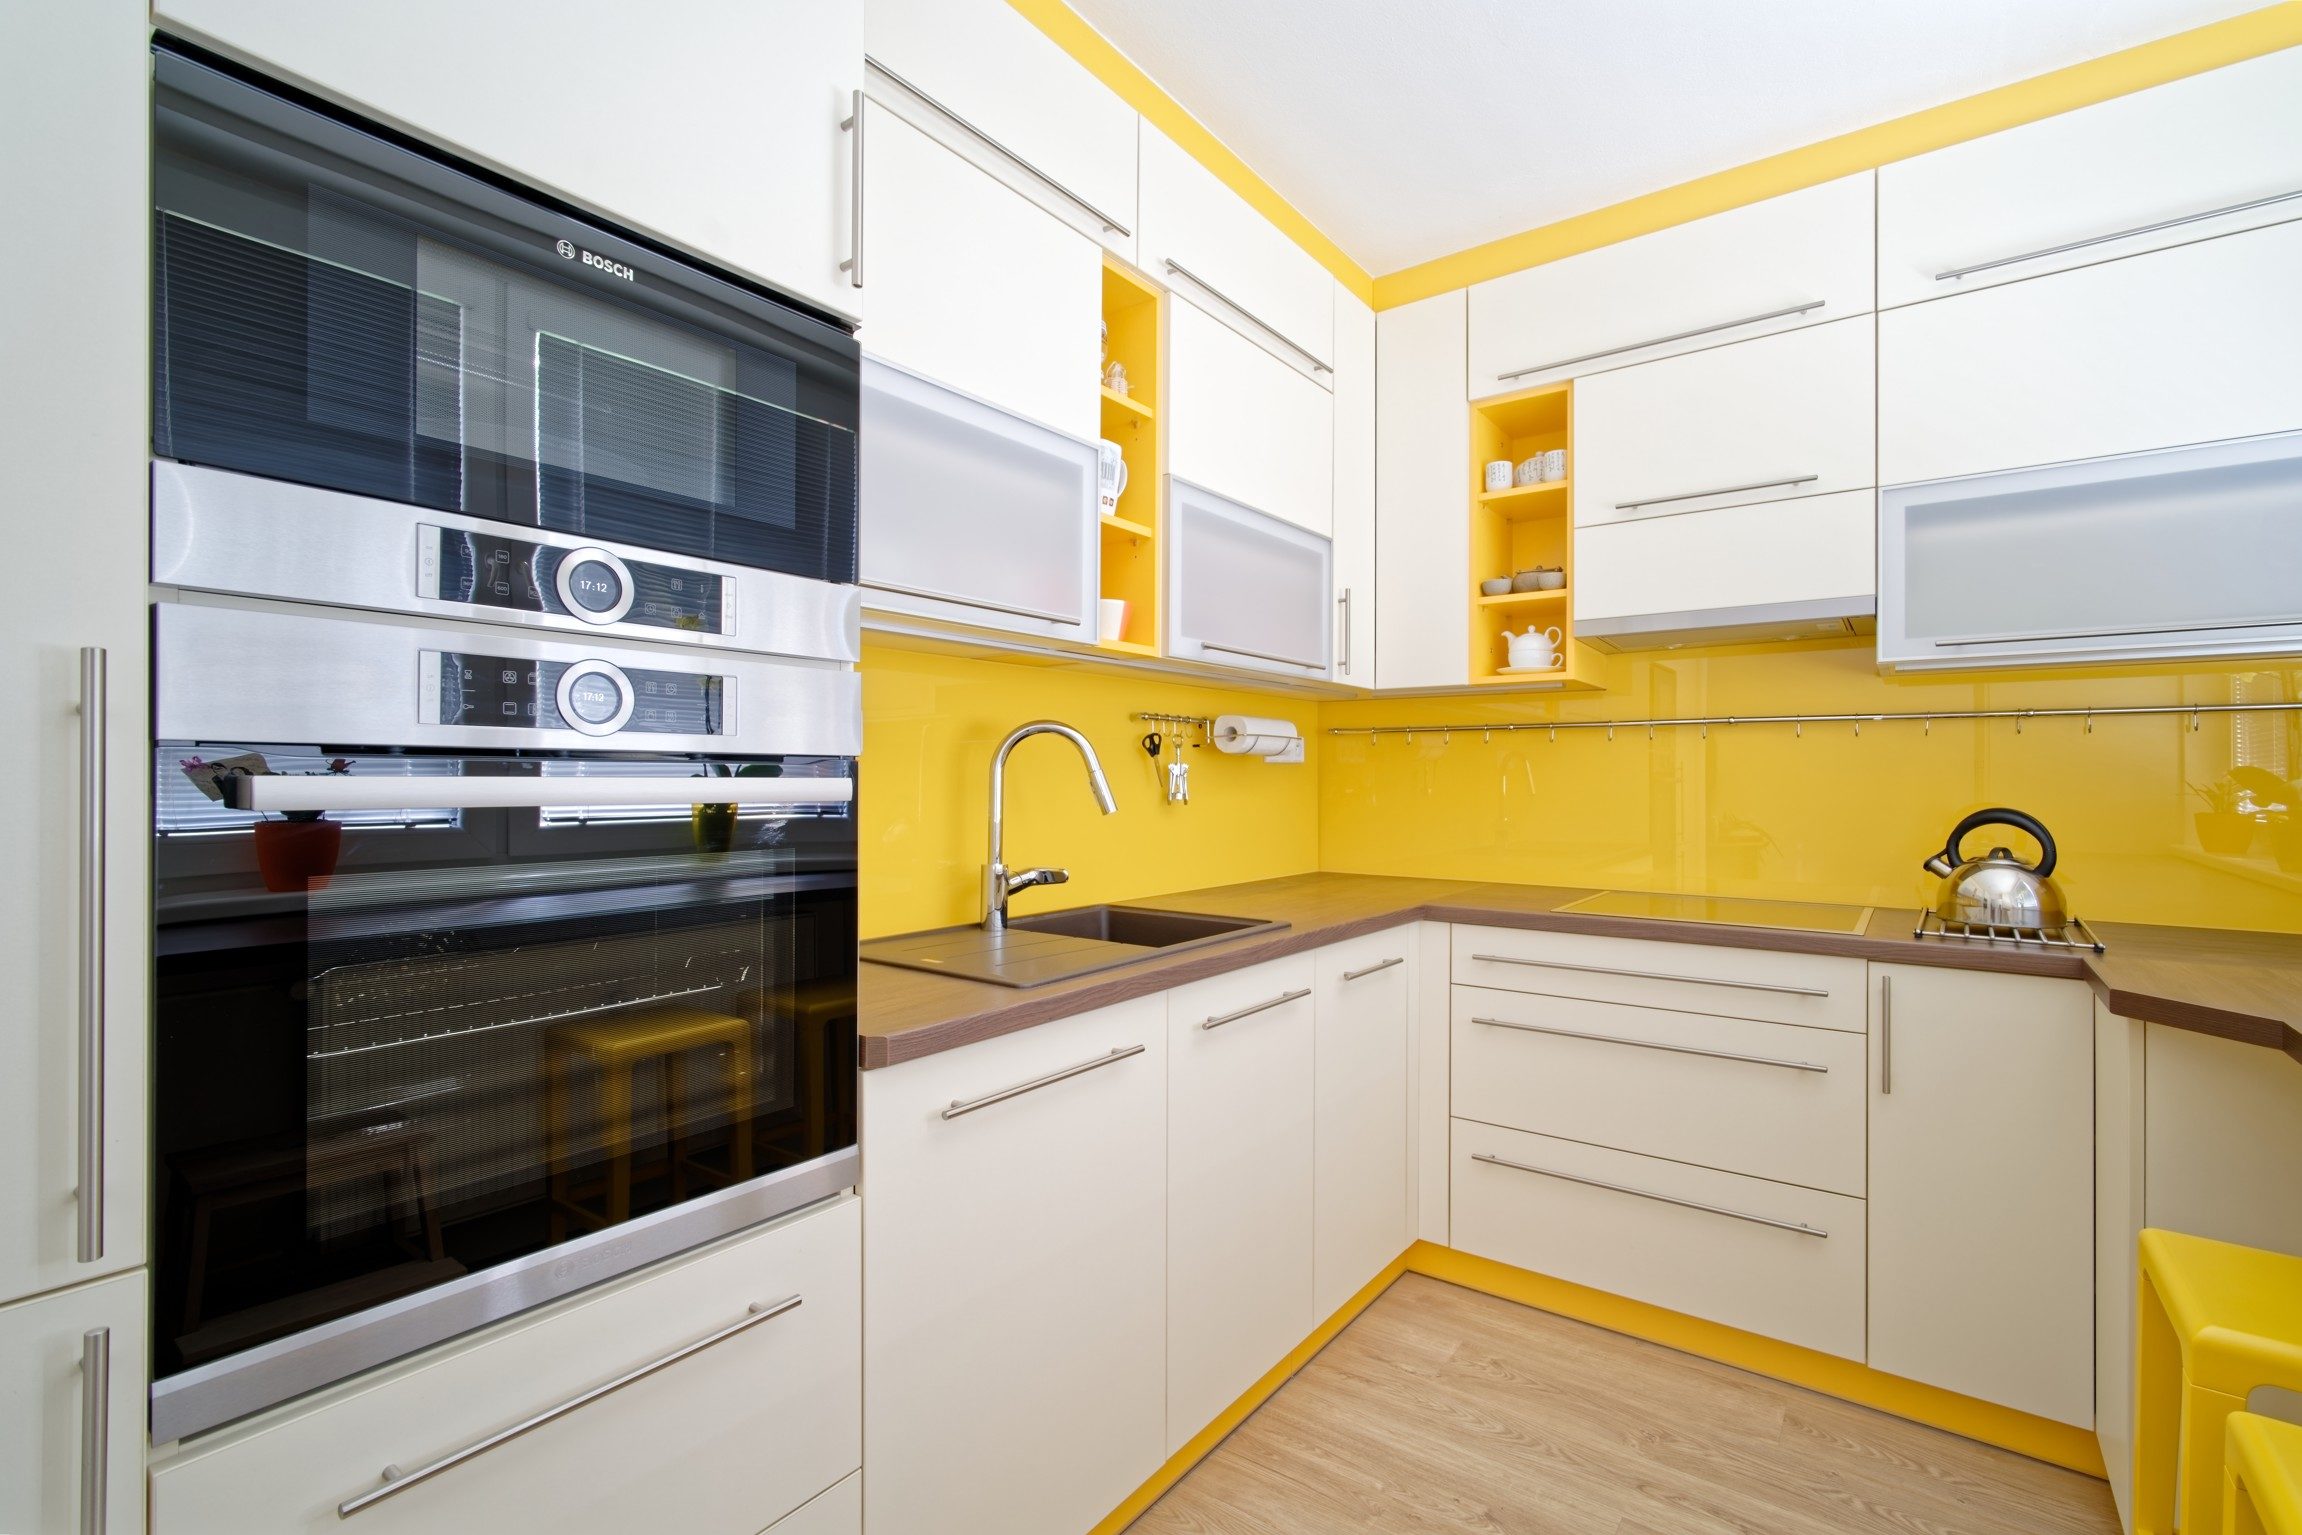 Žlutá kuchyně se zabudovanými spotřebiči